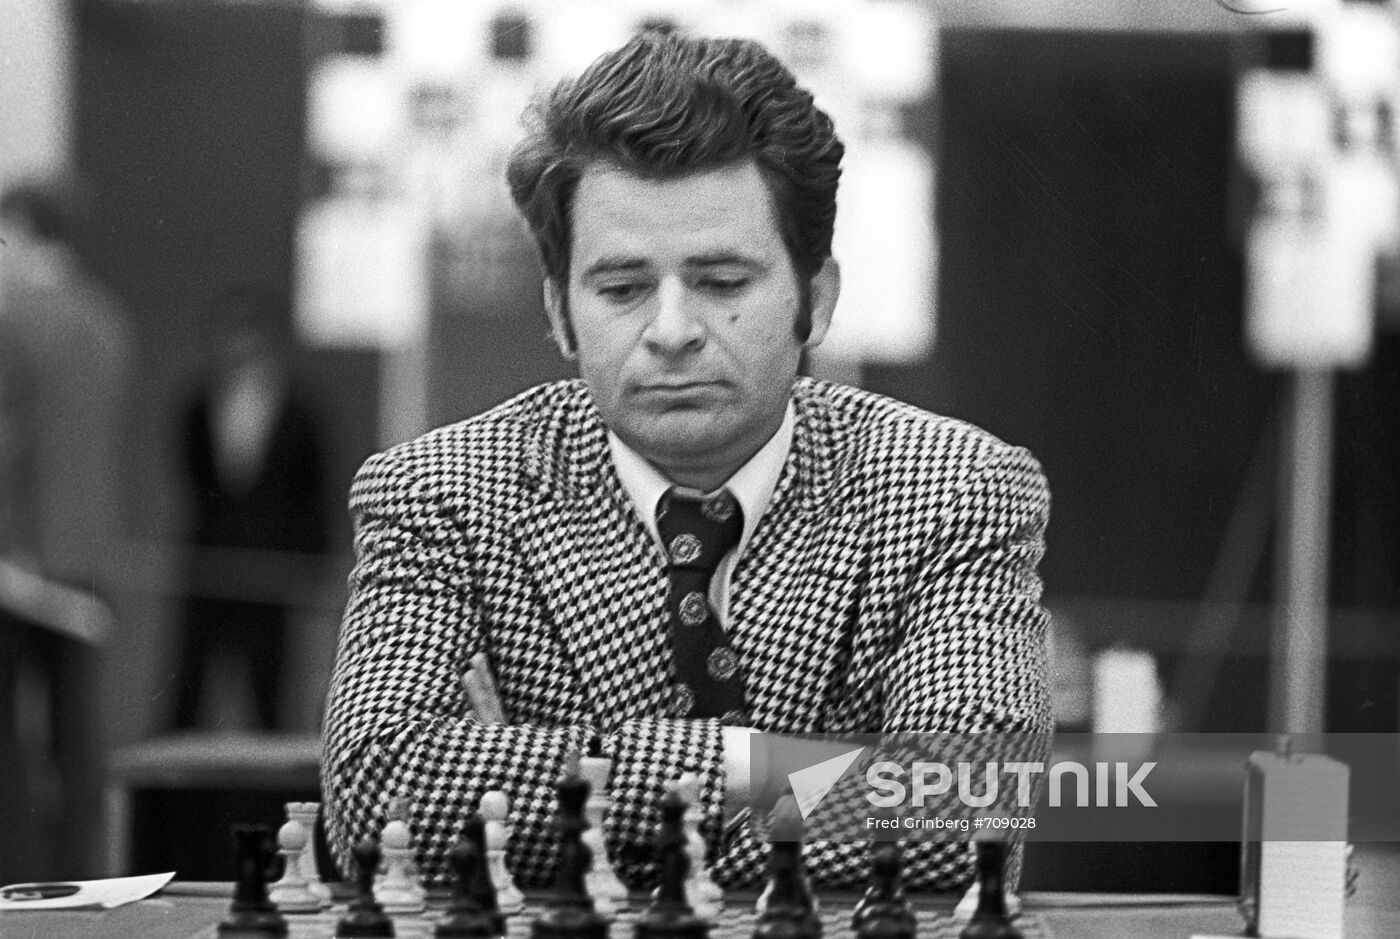 Chess player Boris Spassky